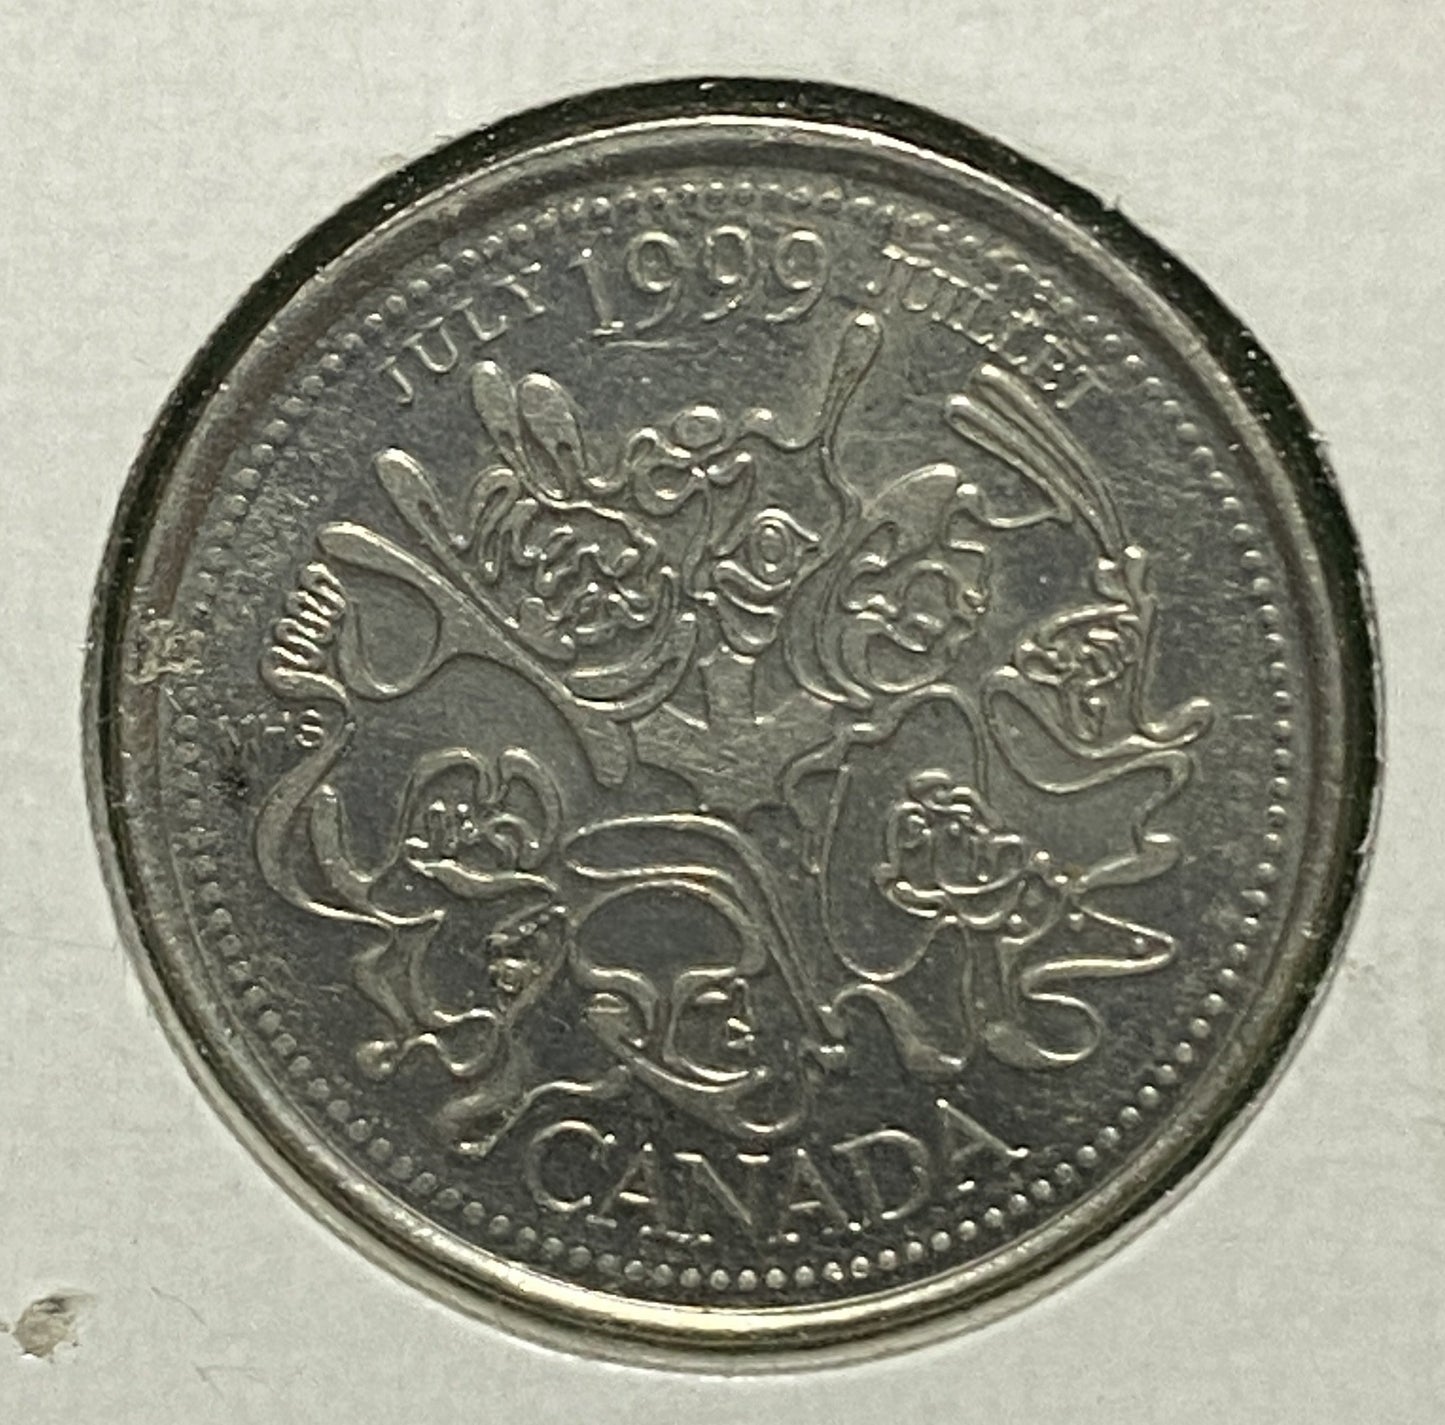 CANADIAN 1999 MILLENNIUM JULY Queen Elizabeth II  25 CENTS QUARTER COIN AU / UNC CONDITION